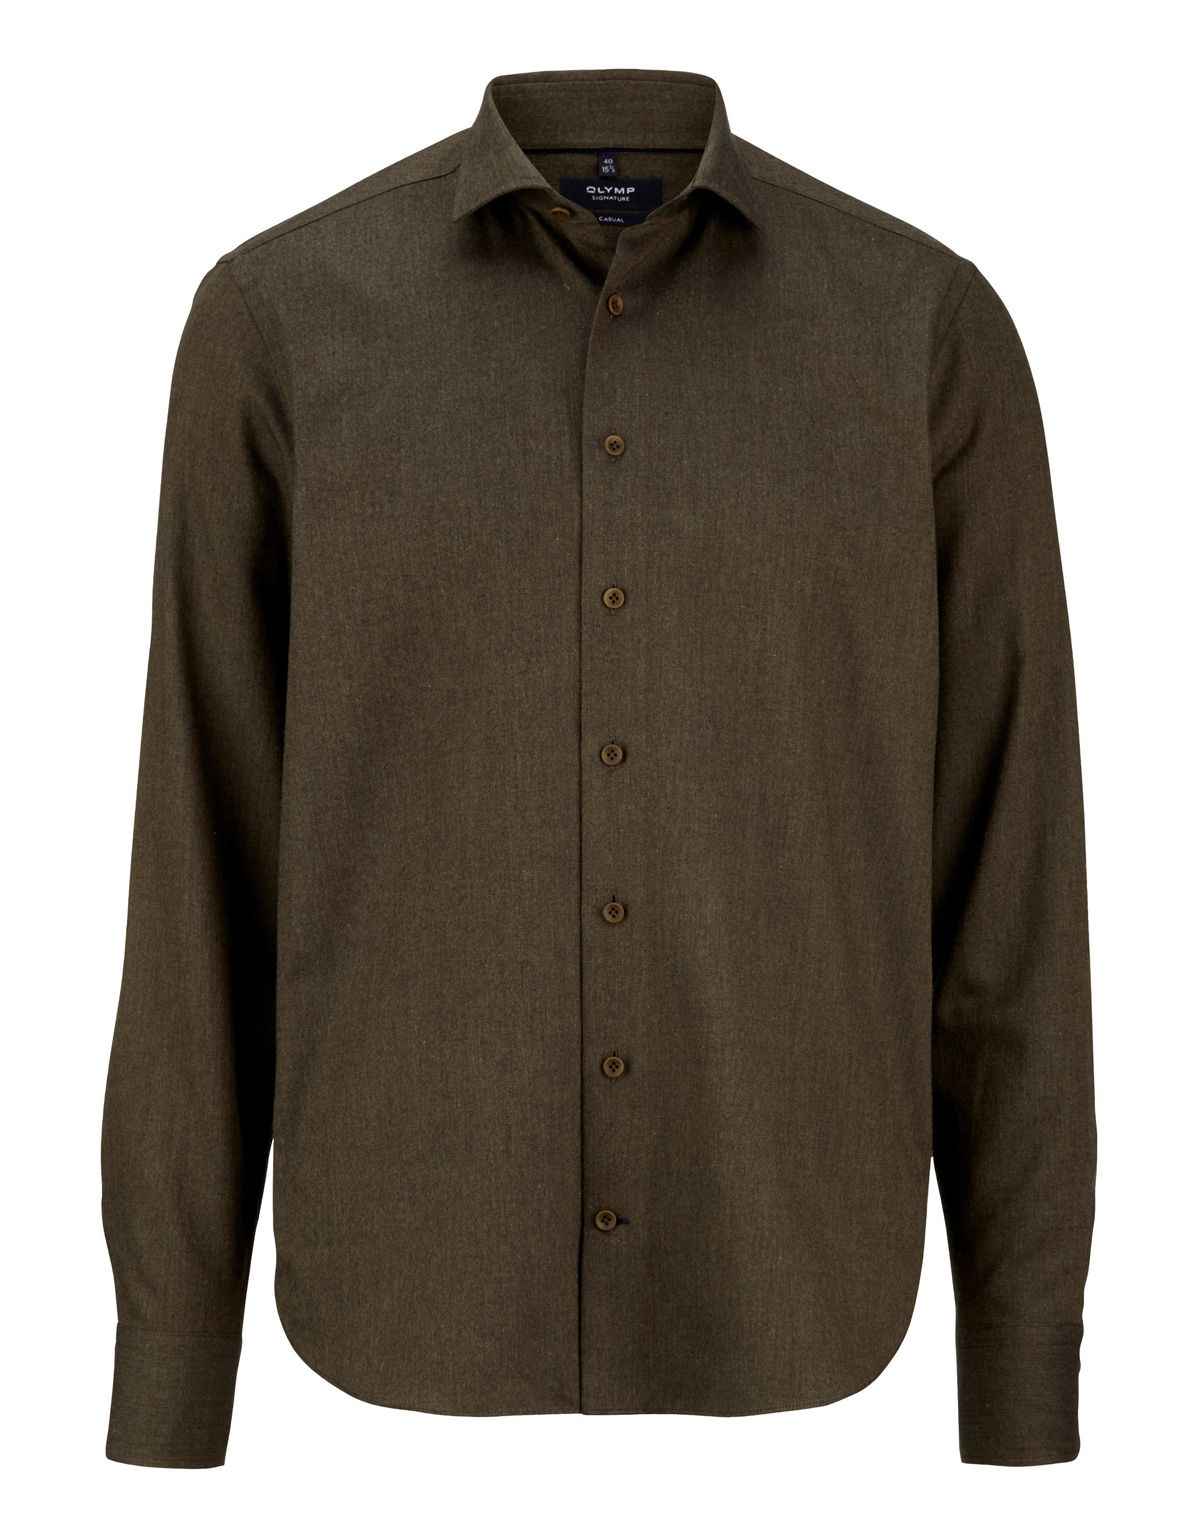 Рубашка фланелевая мужская Signature с кашемиром